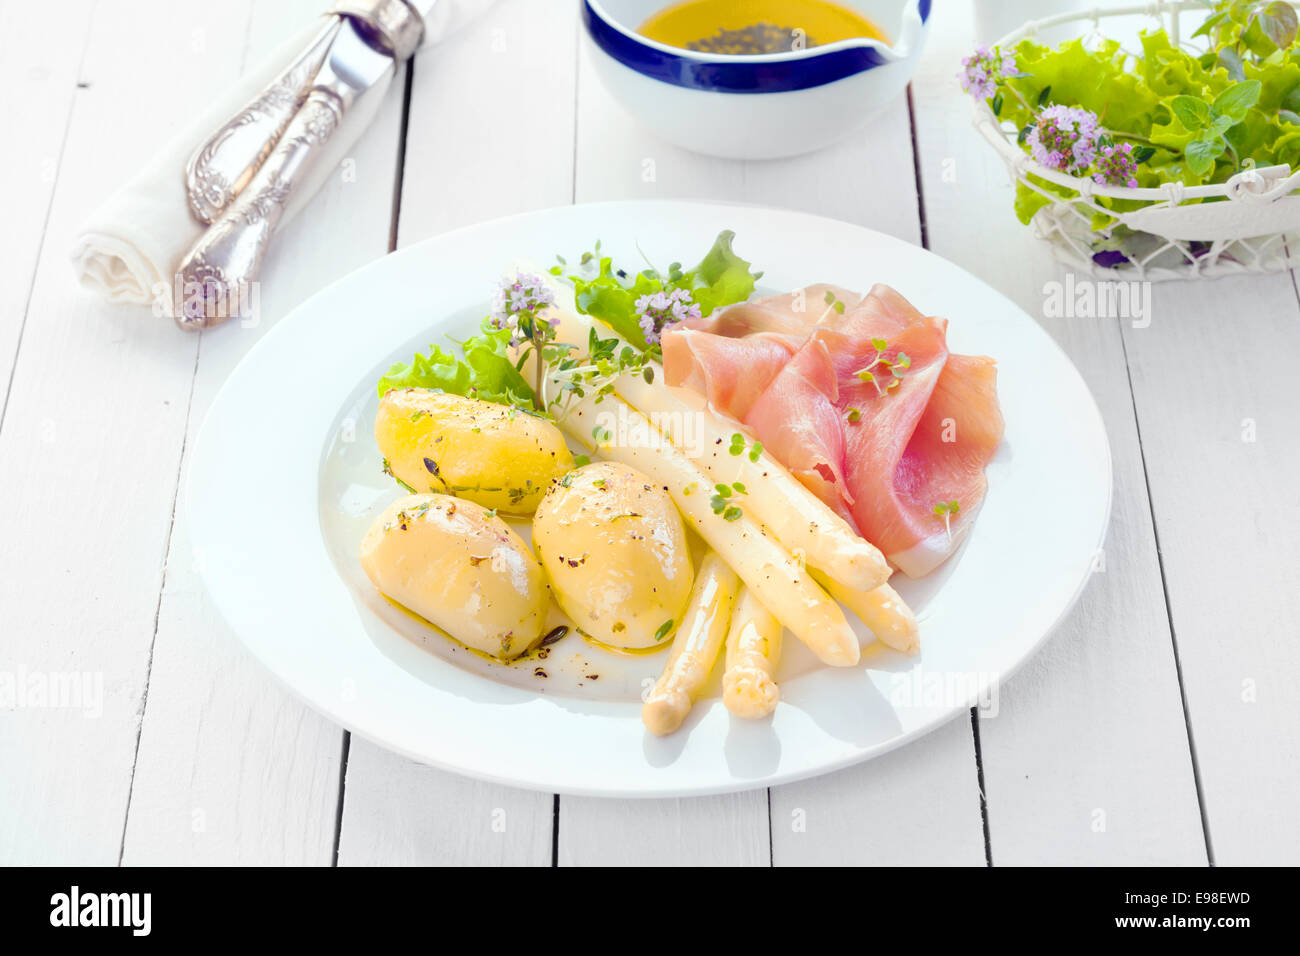 Délicieux déjeuner d'été froid de jambon proscuitto avec asperges et pommes de terre bébé garni d'herbes hachées sur un pays blanc table de cuisine avec un bol de coriandre Banque D'Images